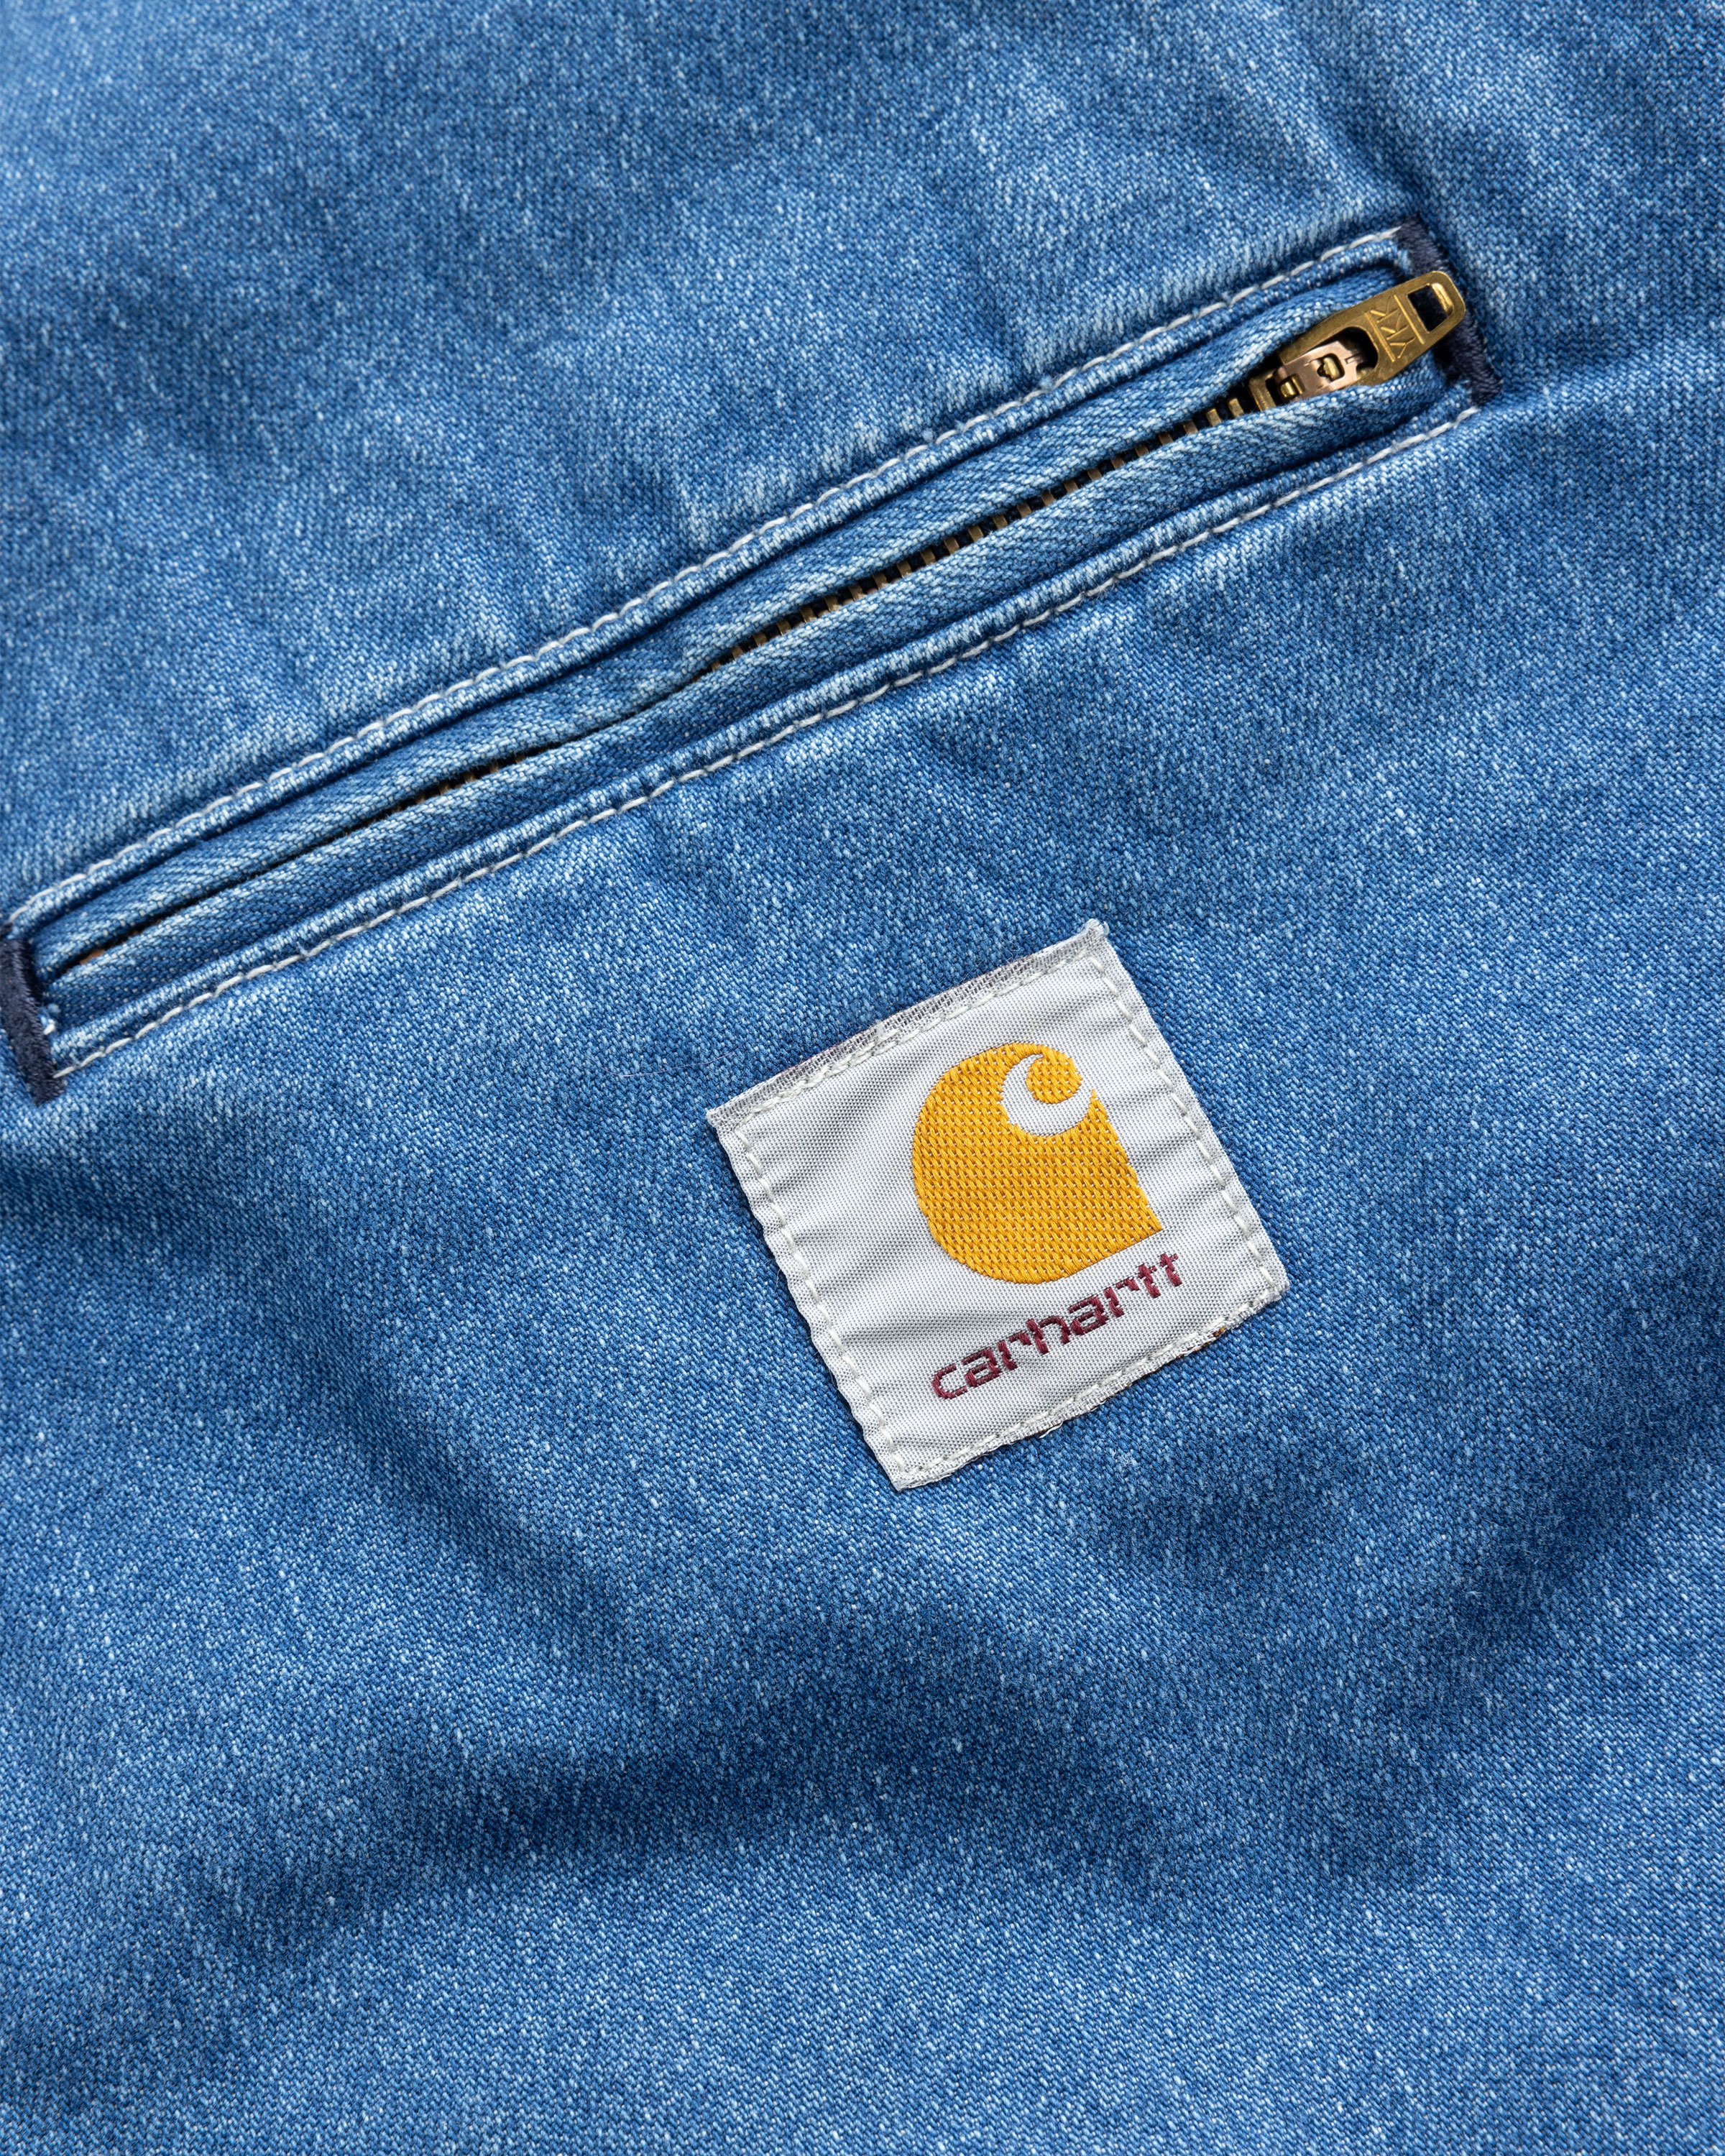 Carhartt WIP - OG Detroit Jacket Blue/Stone Washed - Clothing - Blue - Image 6